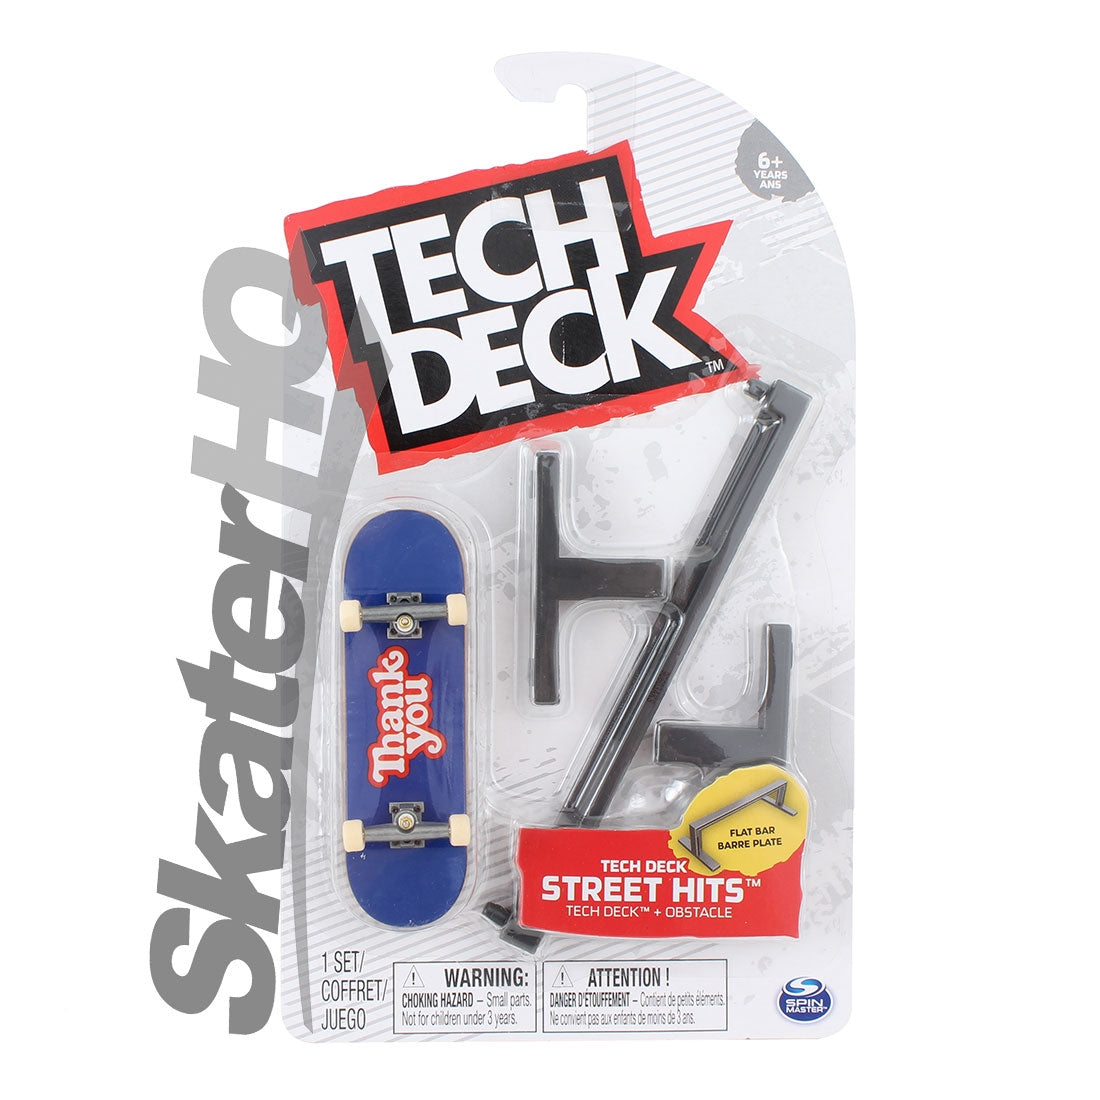 Tech Deck Street Hits - Flat Bar Skateboard Accessories